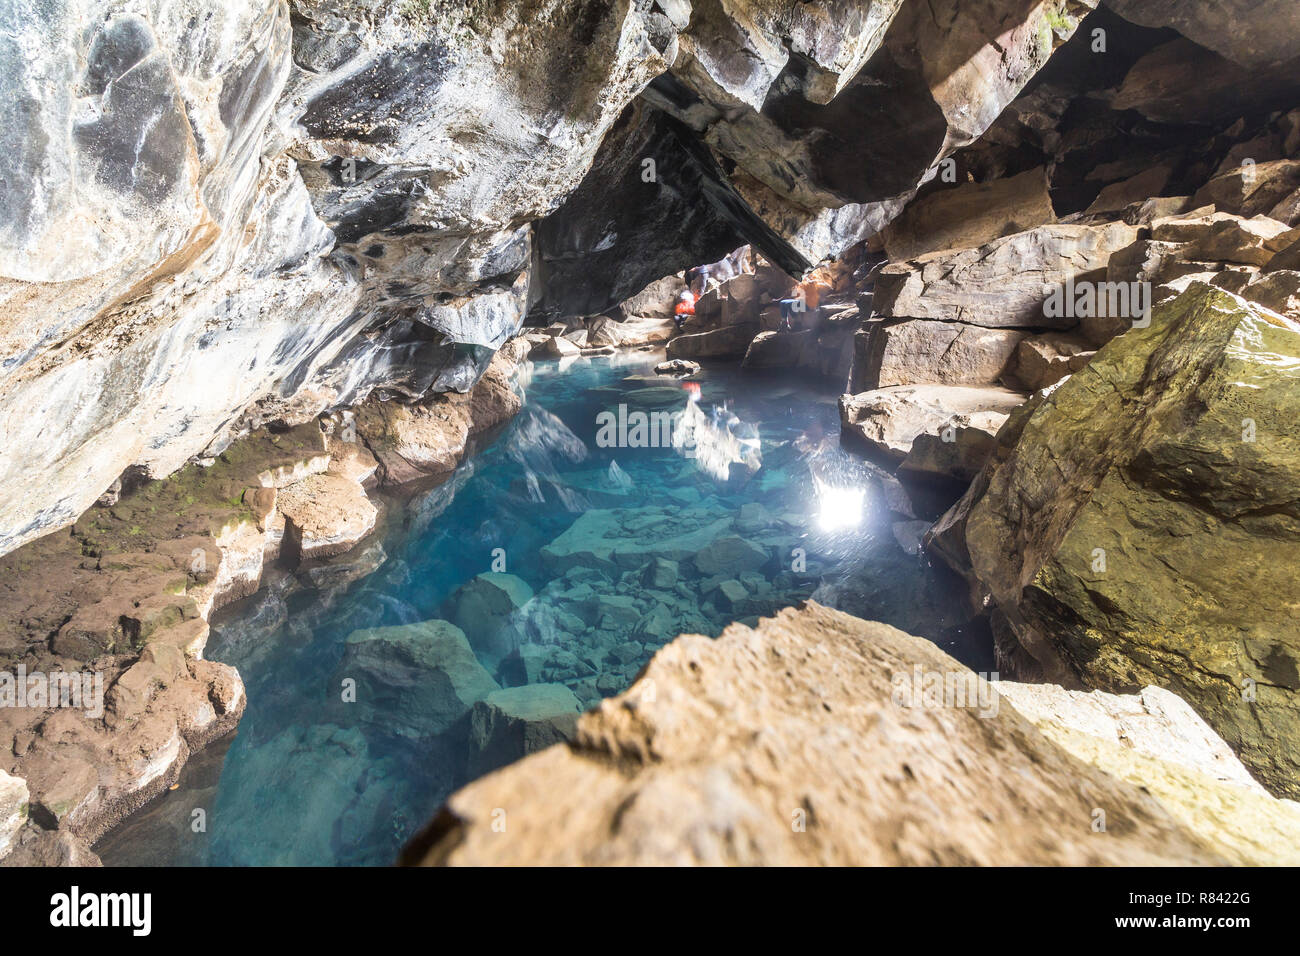 Grotte de Grotagja, eau chaude myvatn Islande Banque D'Images